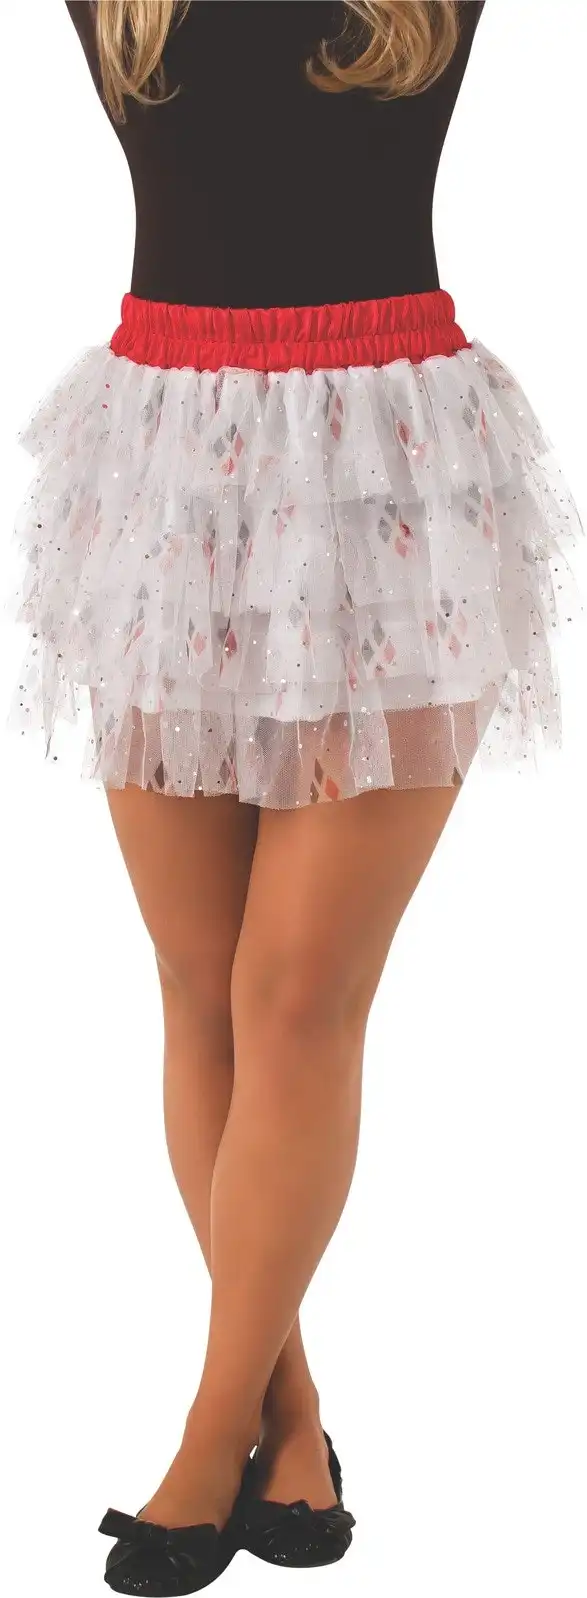 DC Comics Harley Quinn Skirt w/Sequin Teen/Girls Halloween Costume Size Standard